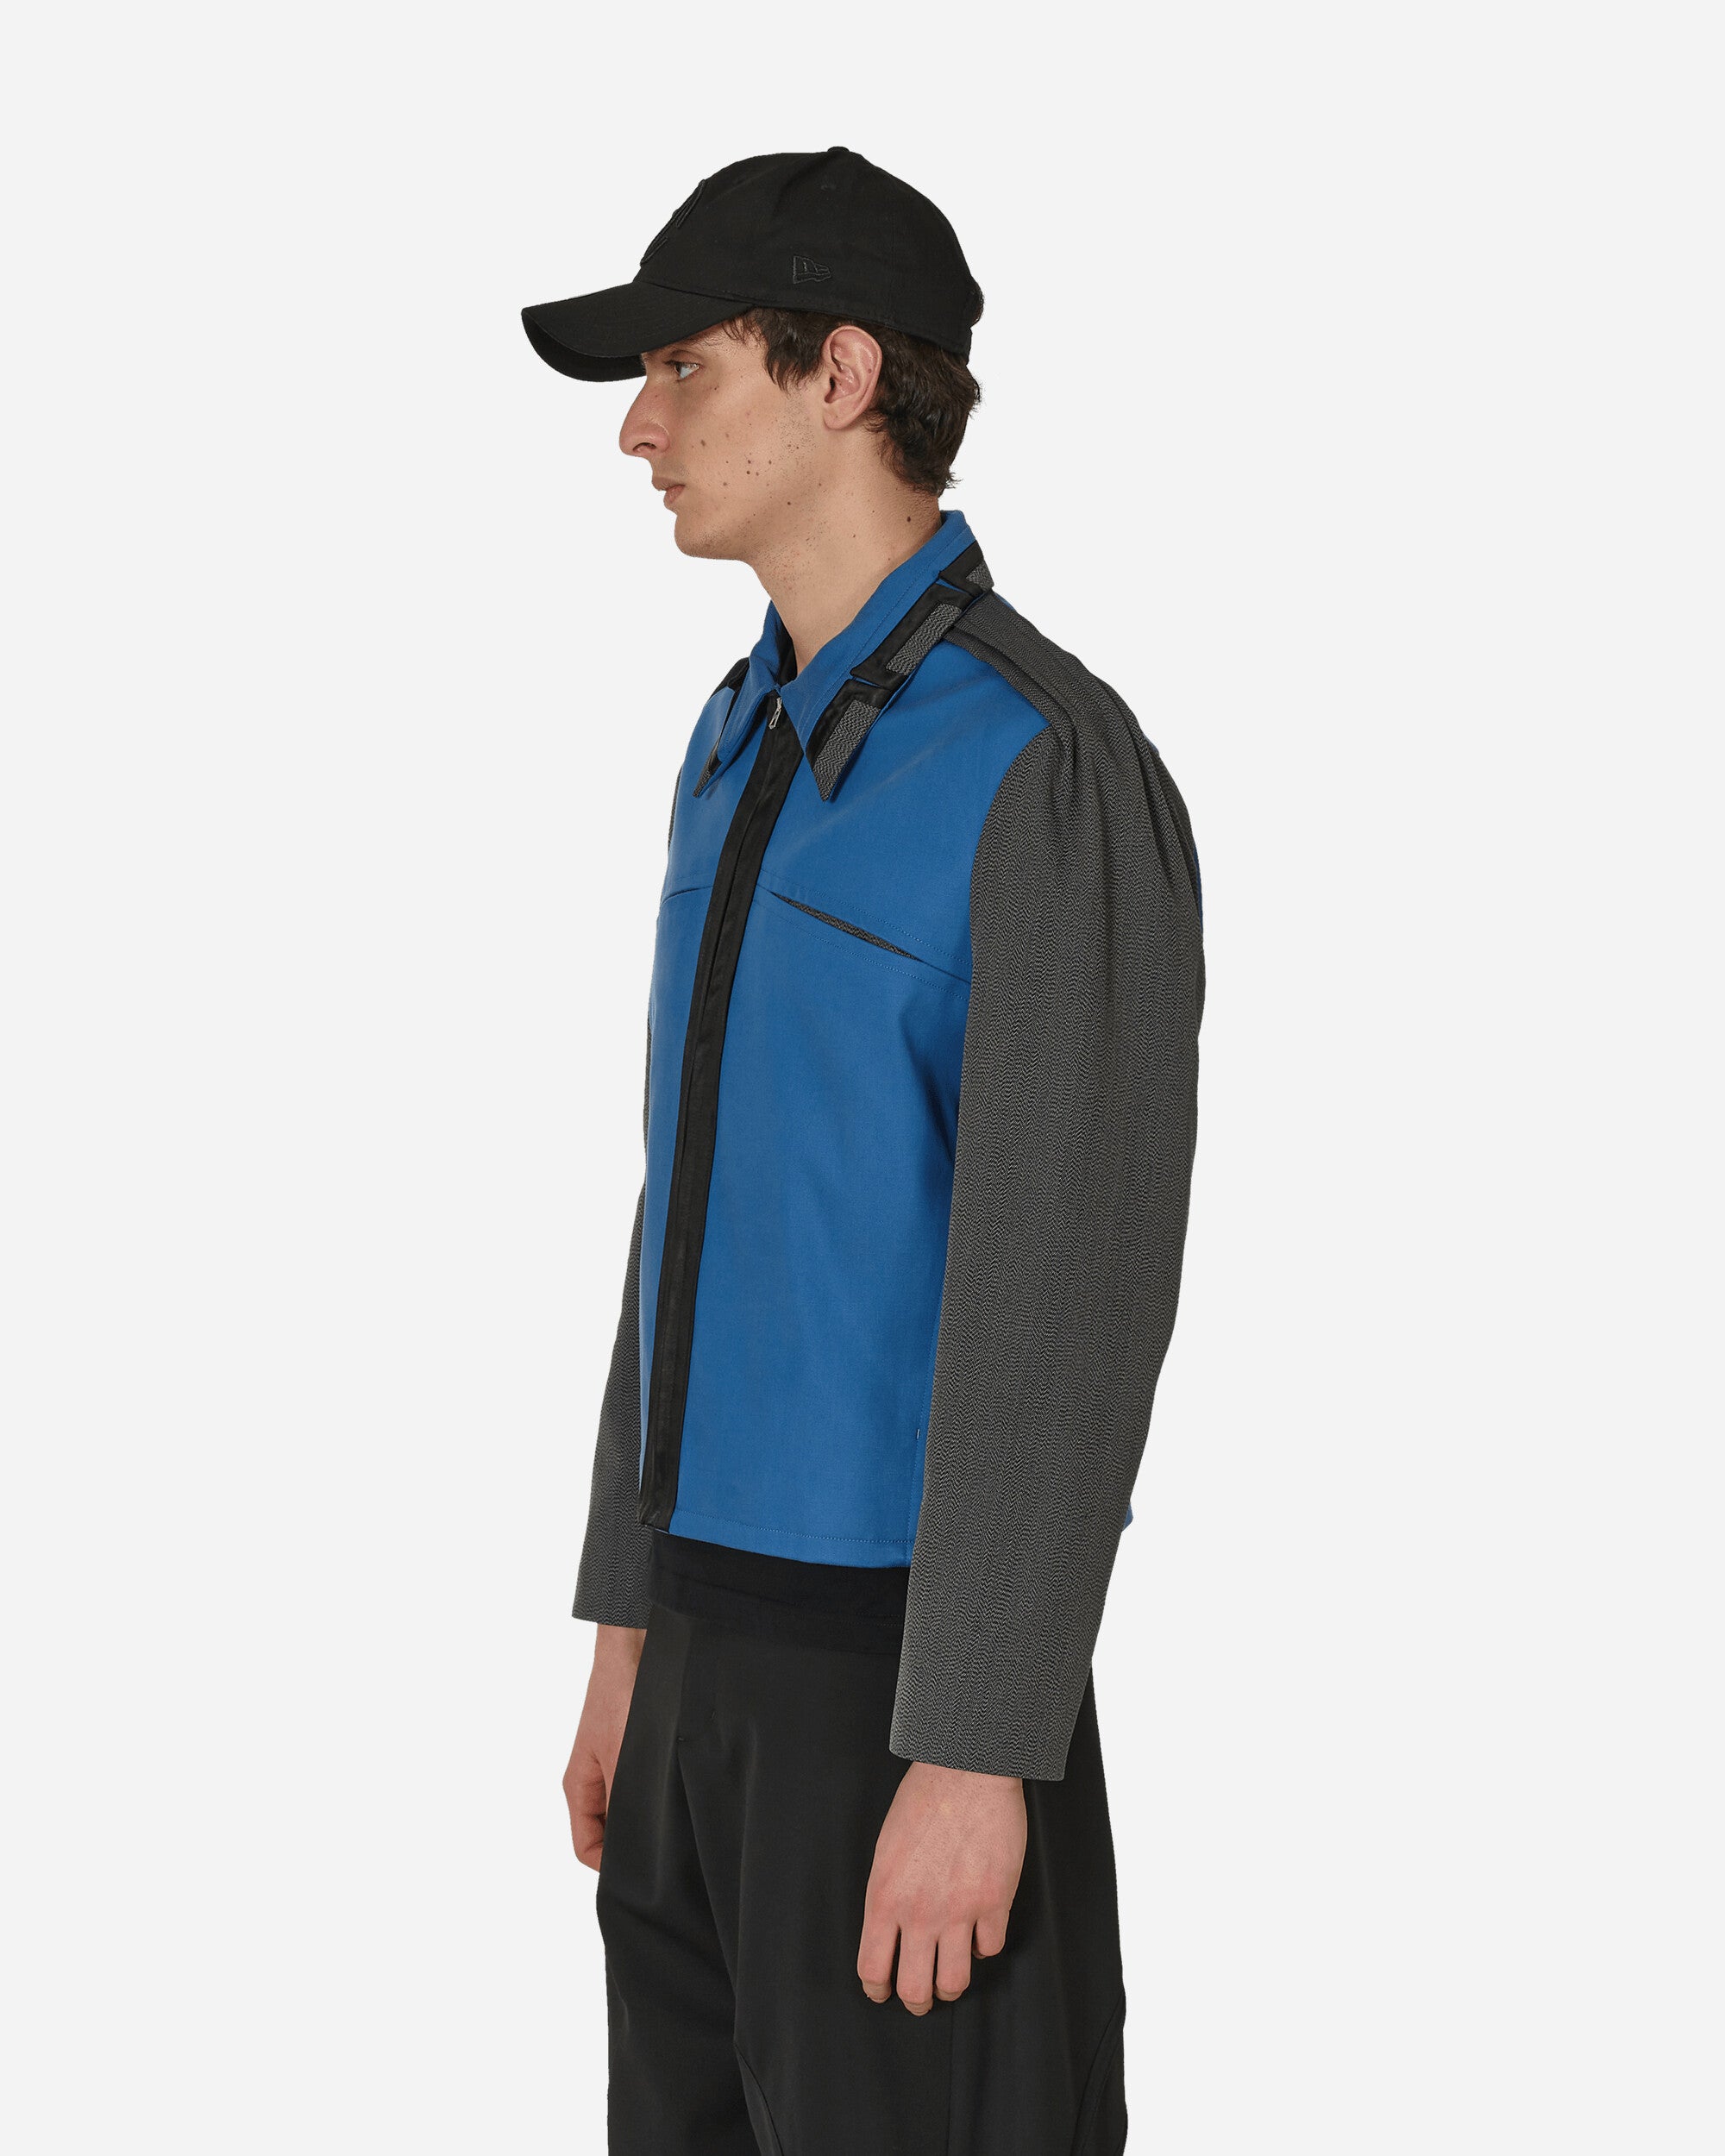 Kiko Kostadinov Ugo Blouson Azure Blue Coats and Jackets Jackets KKSS24J08 41